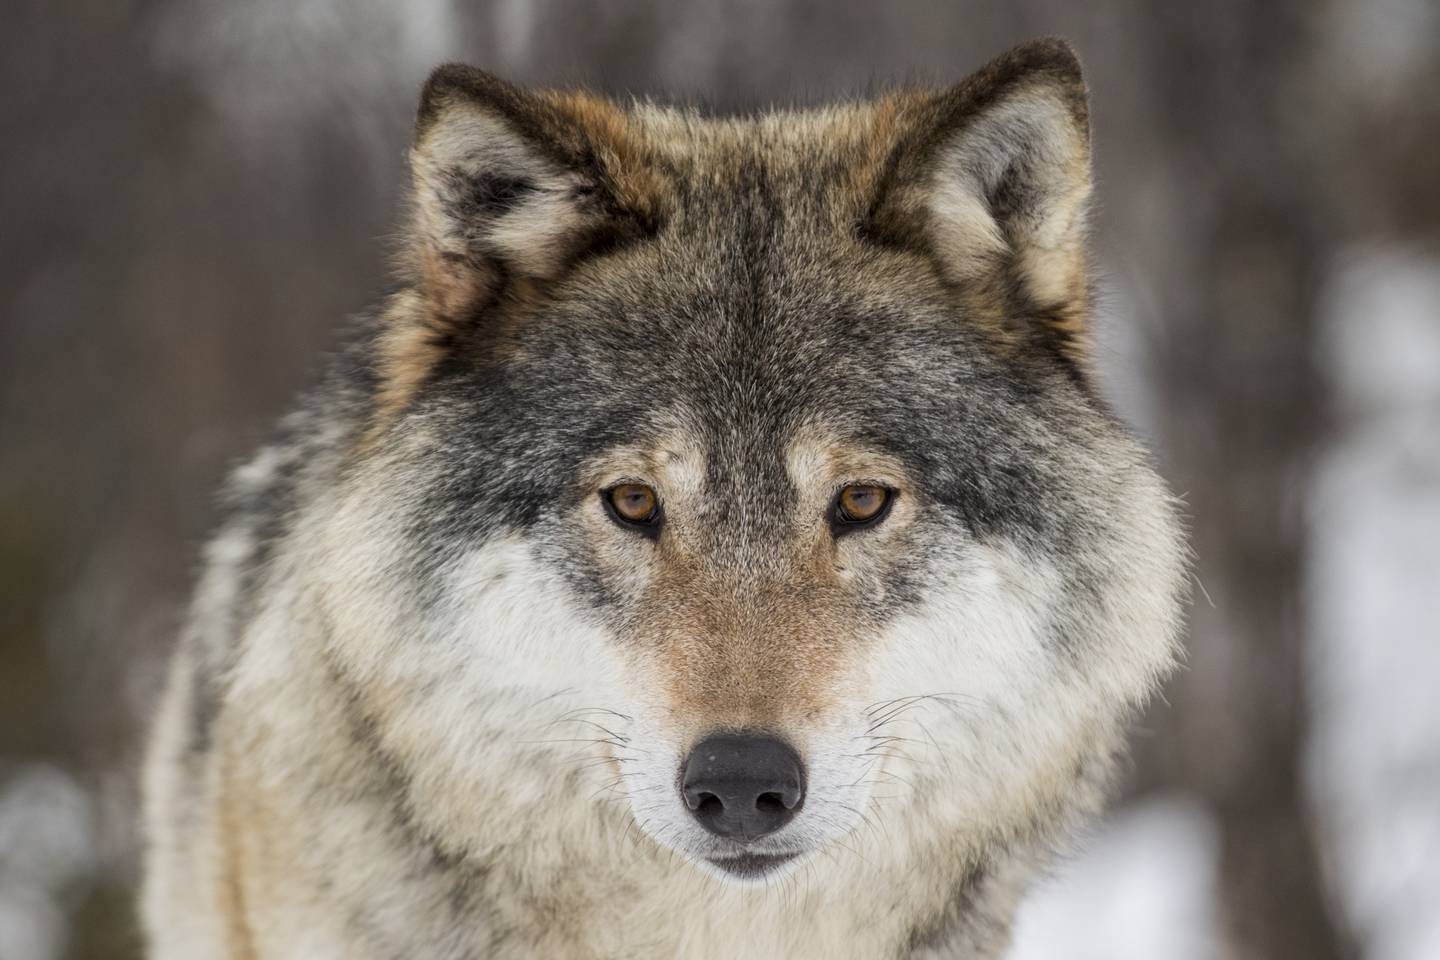 Ulven ble fredet i Norge i 1973, og er også beskyttet gjennom Bernkonvensjonen, men likevel er det en omfattende lisensjakt på ulv også denne vinteren.